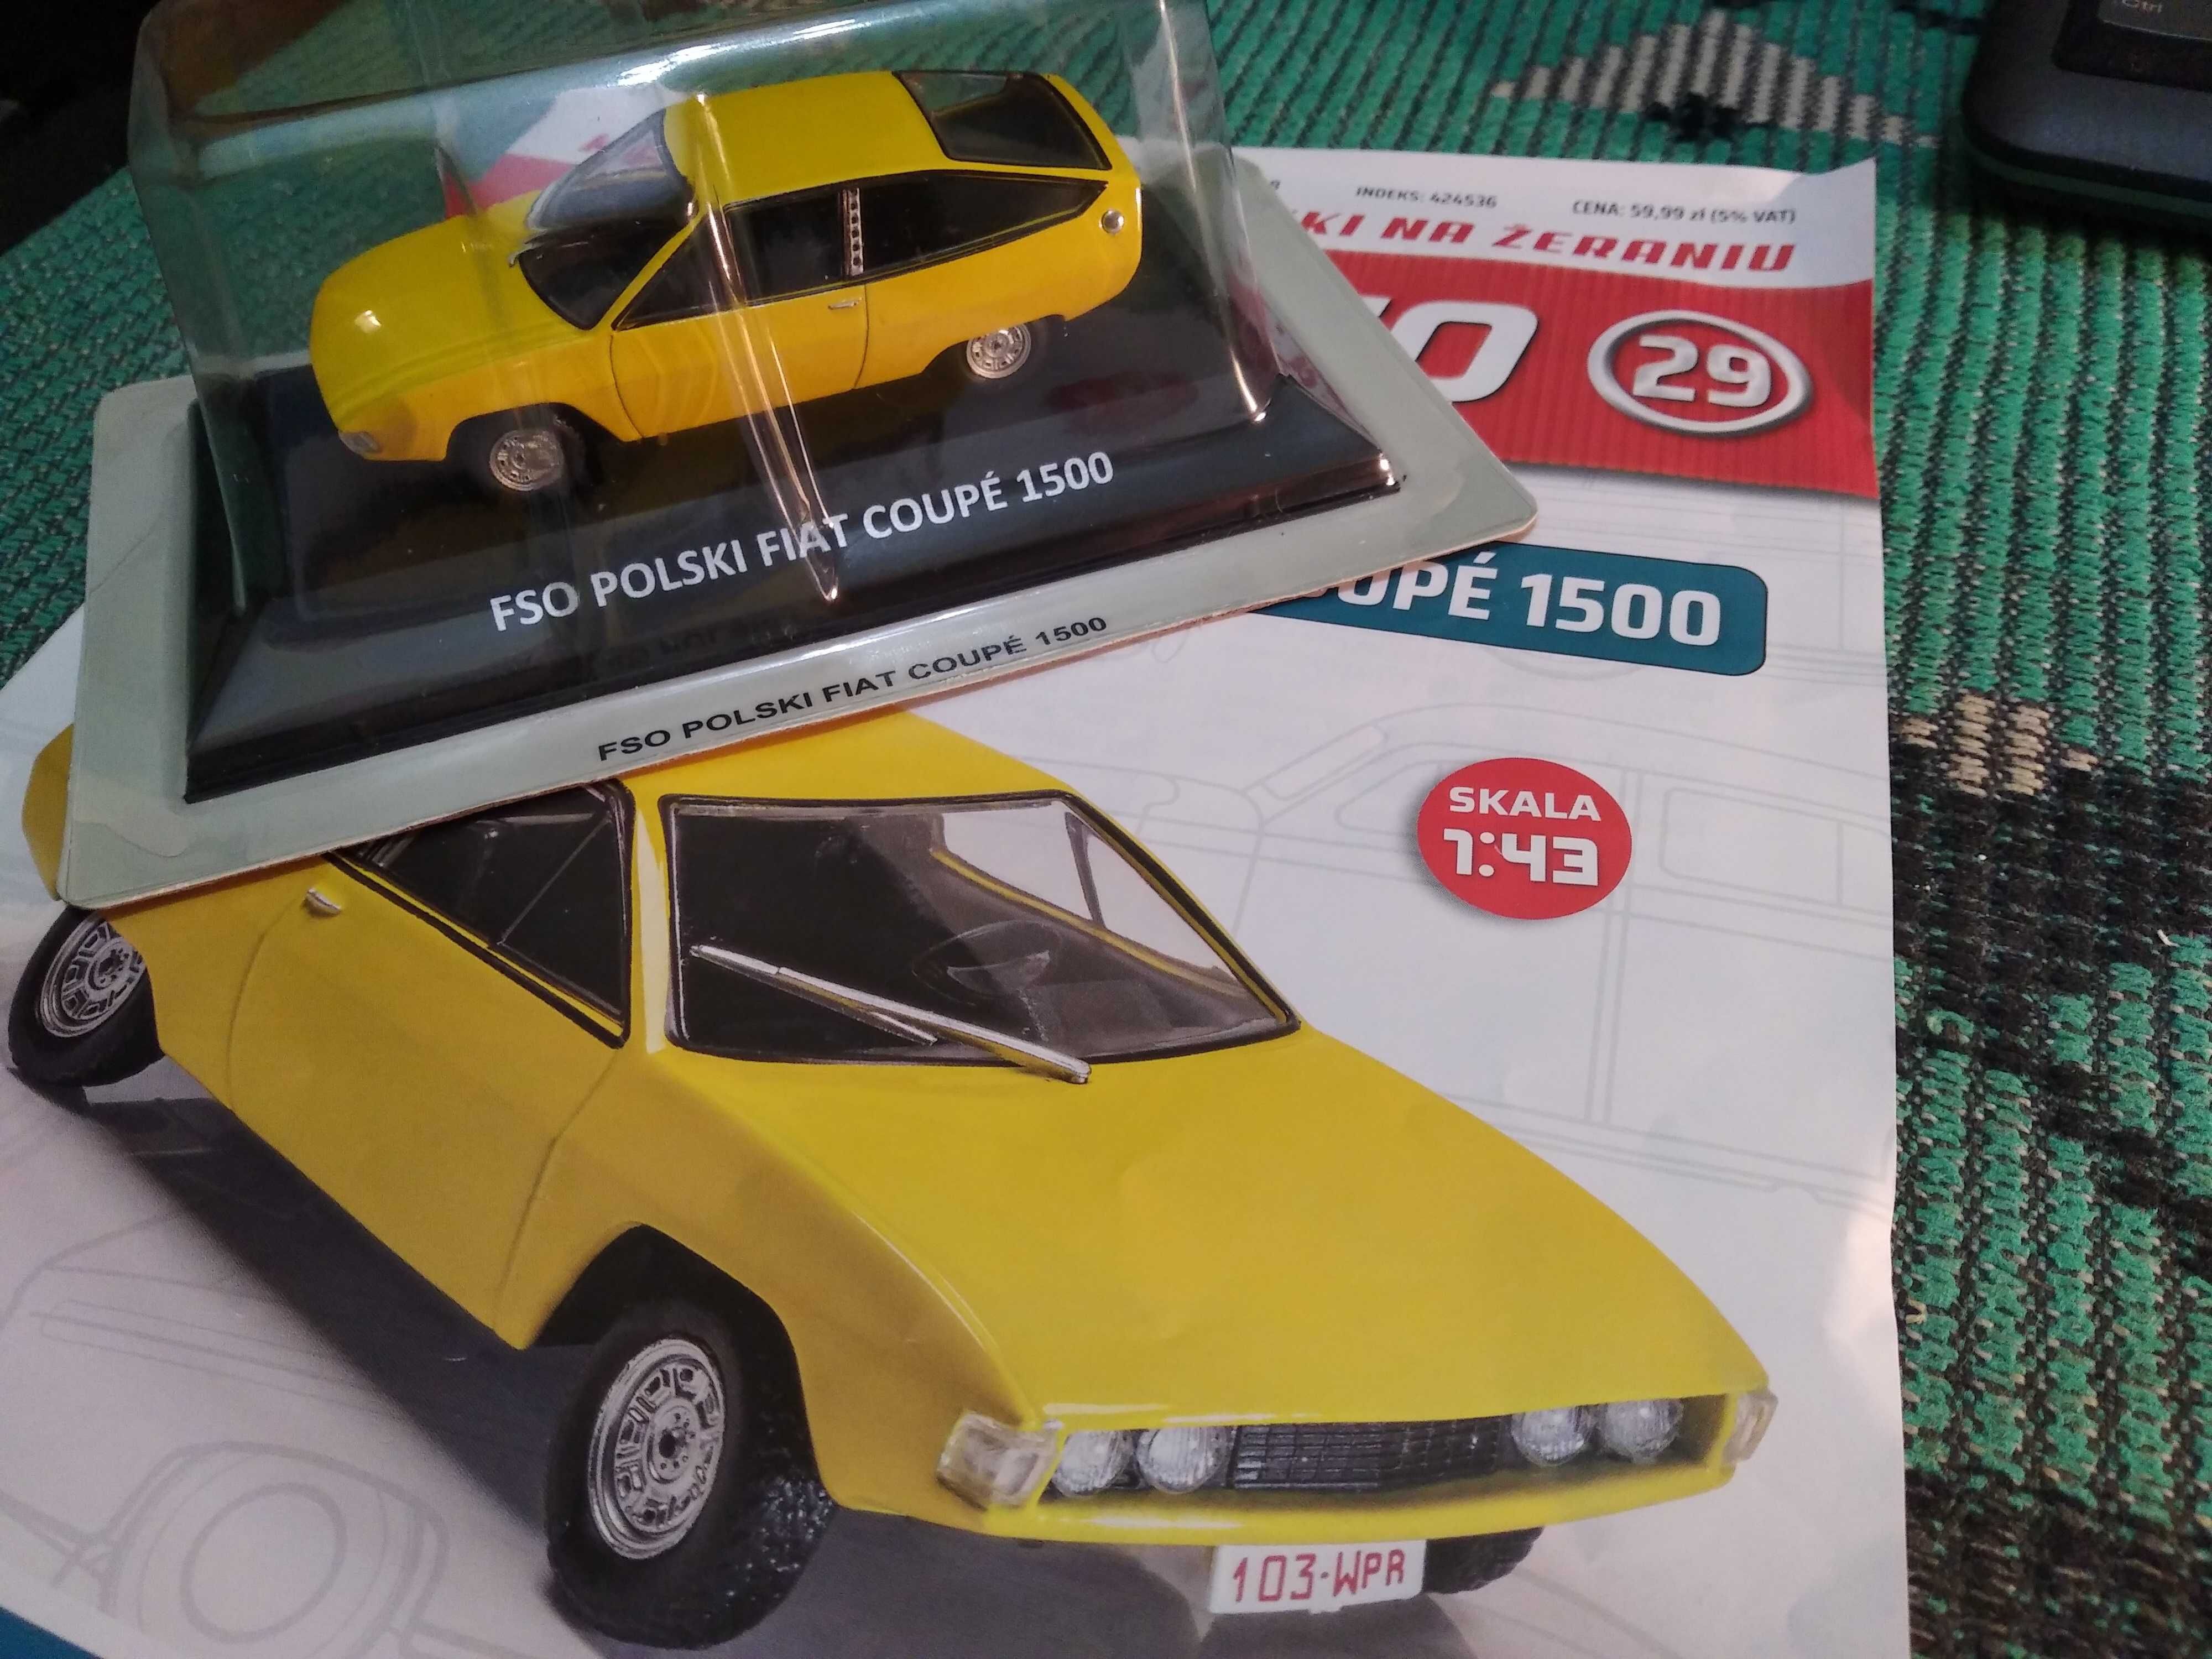 Журнал №29 Легенди ФСО з моделлю Fiat Coupe 1500.